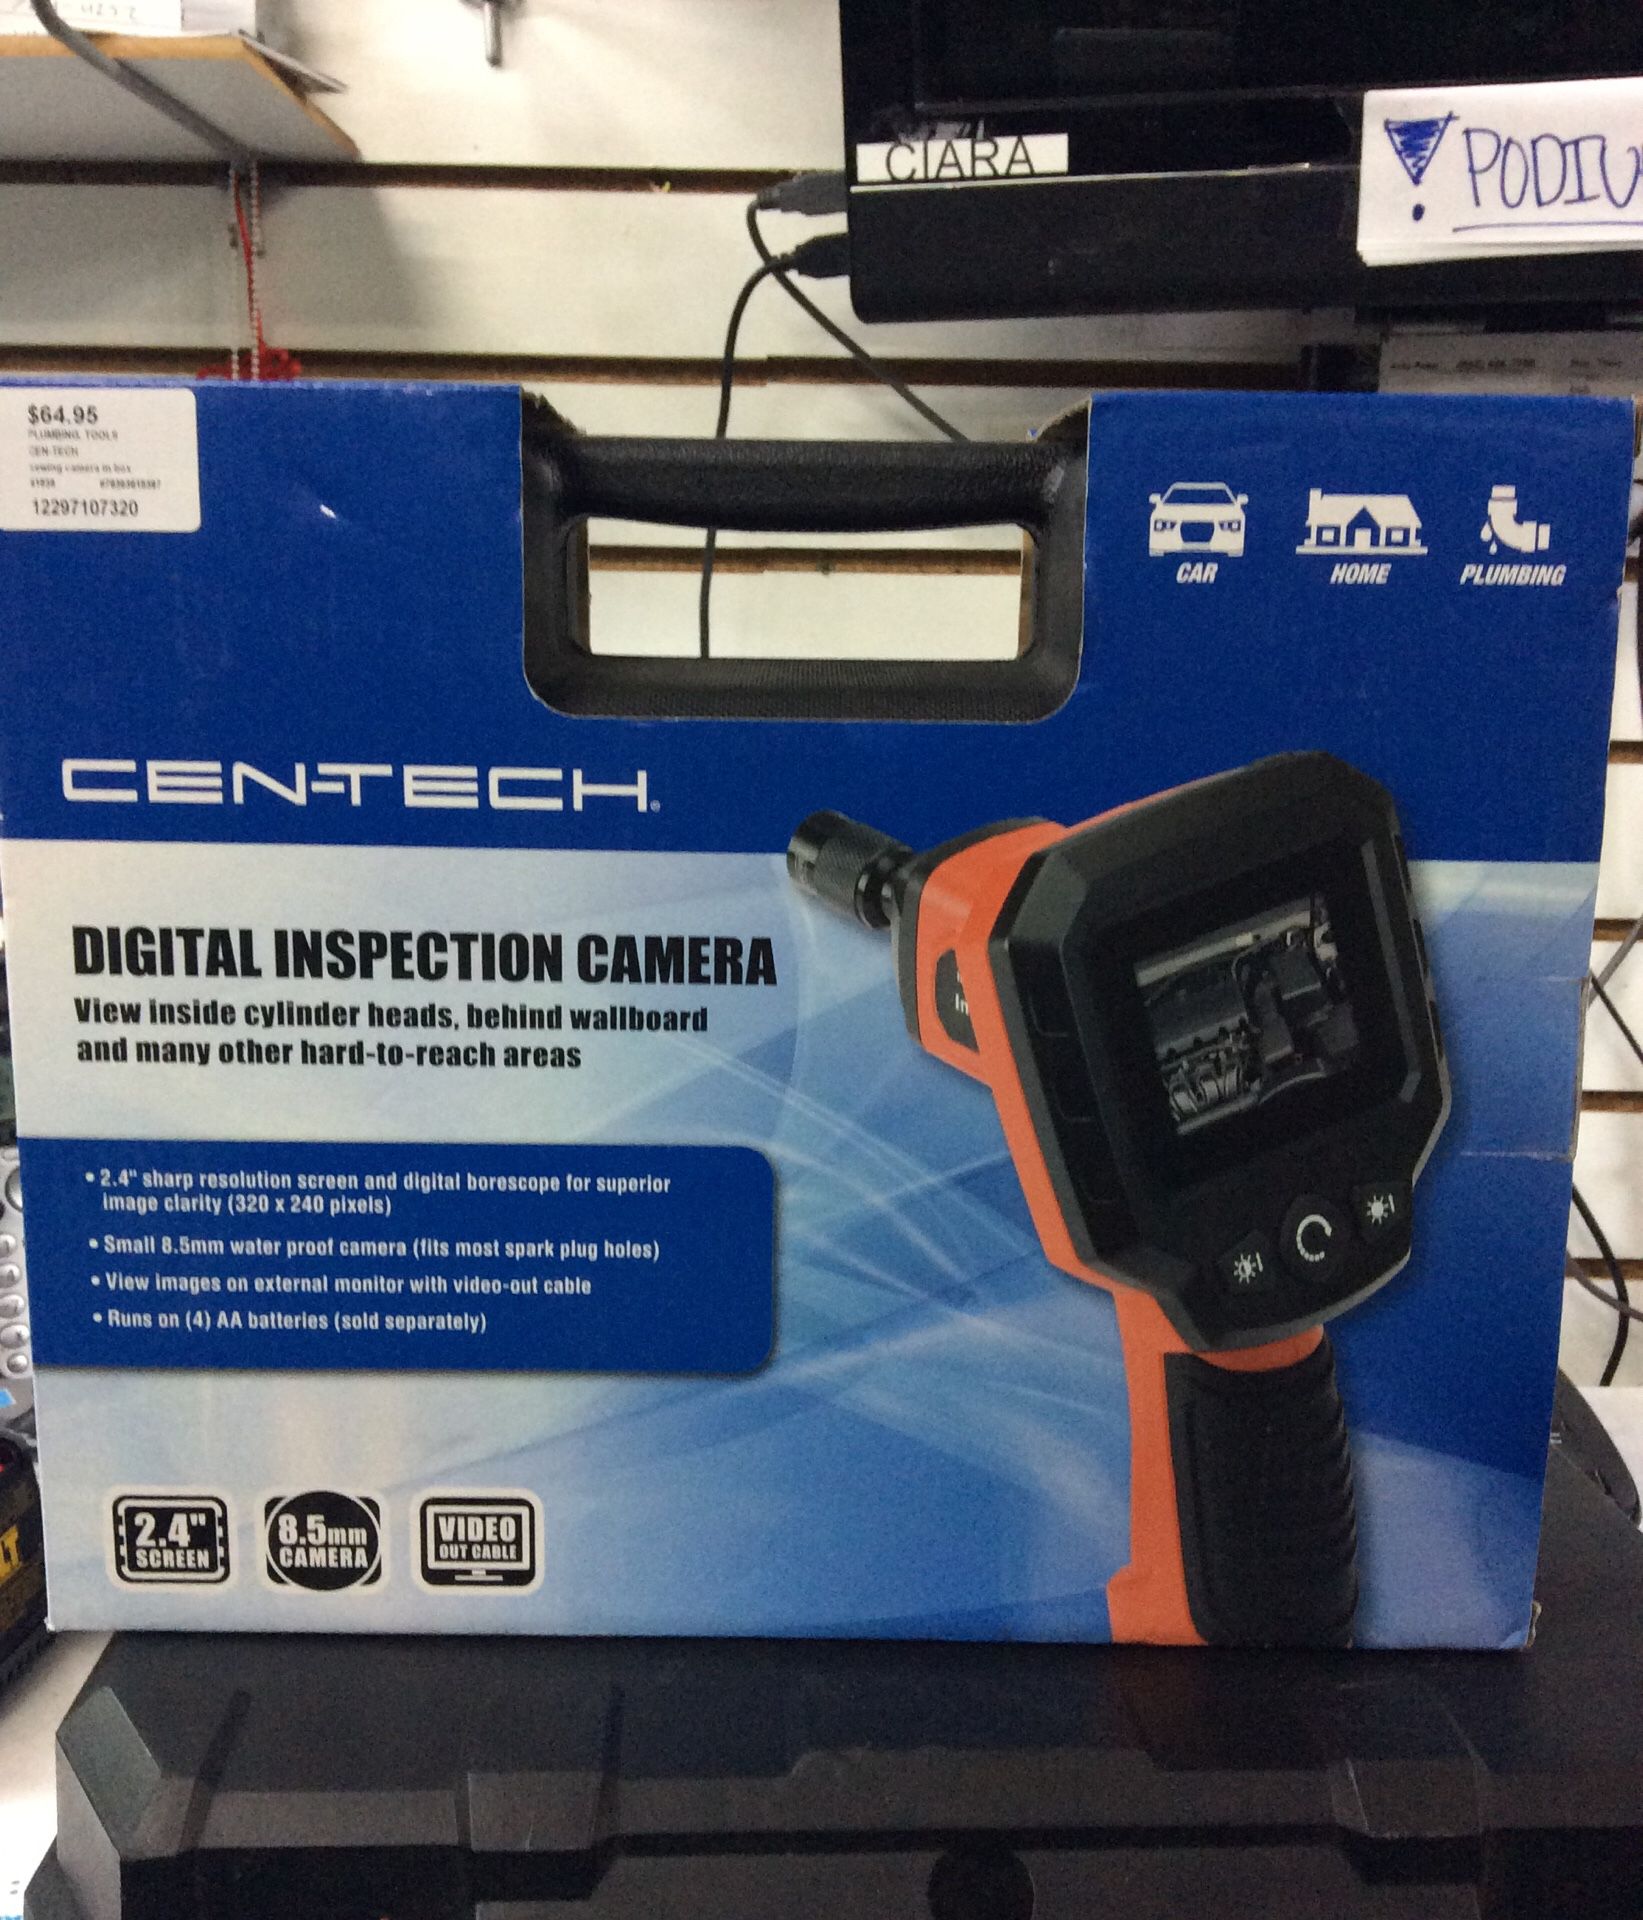 Cen-Tech Digital Inspection Camera